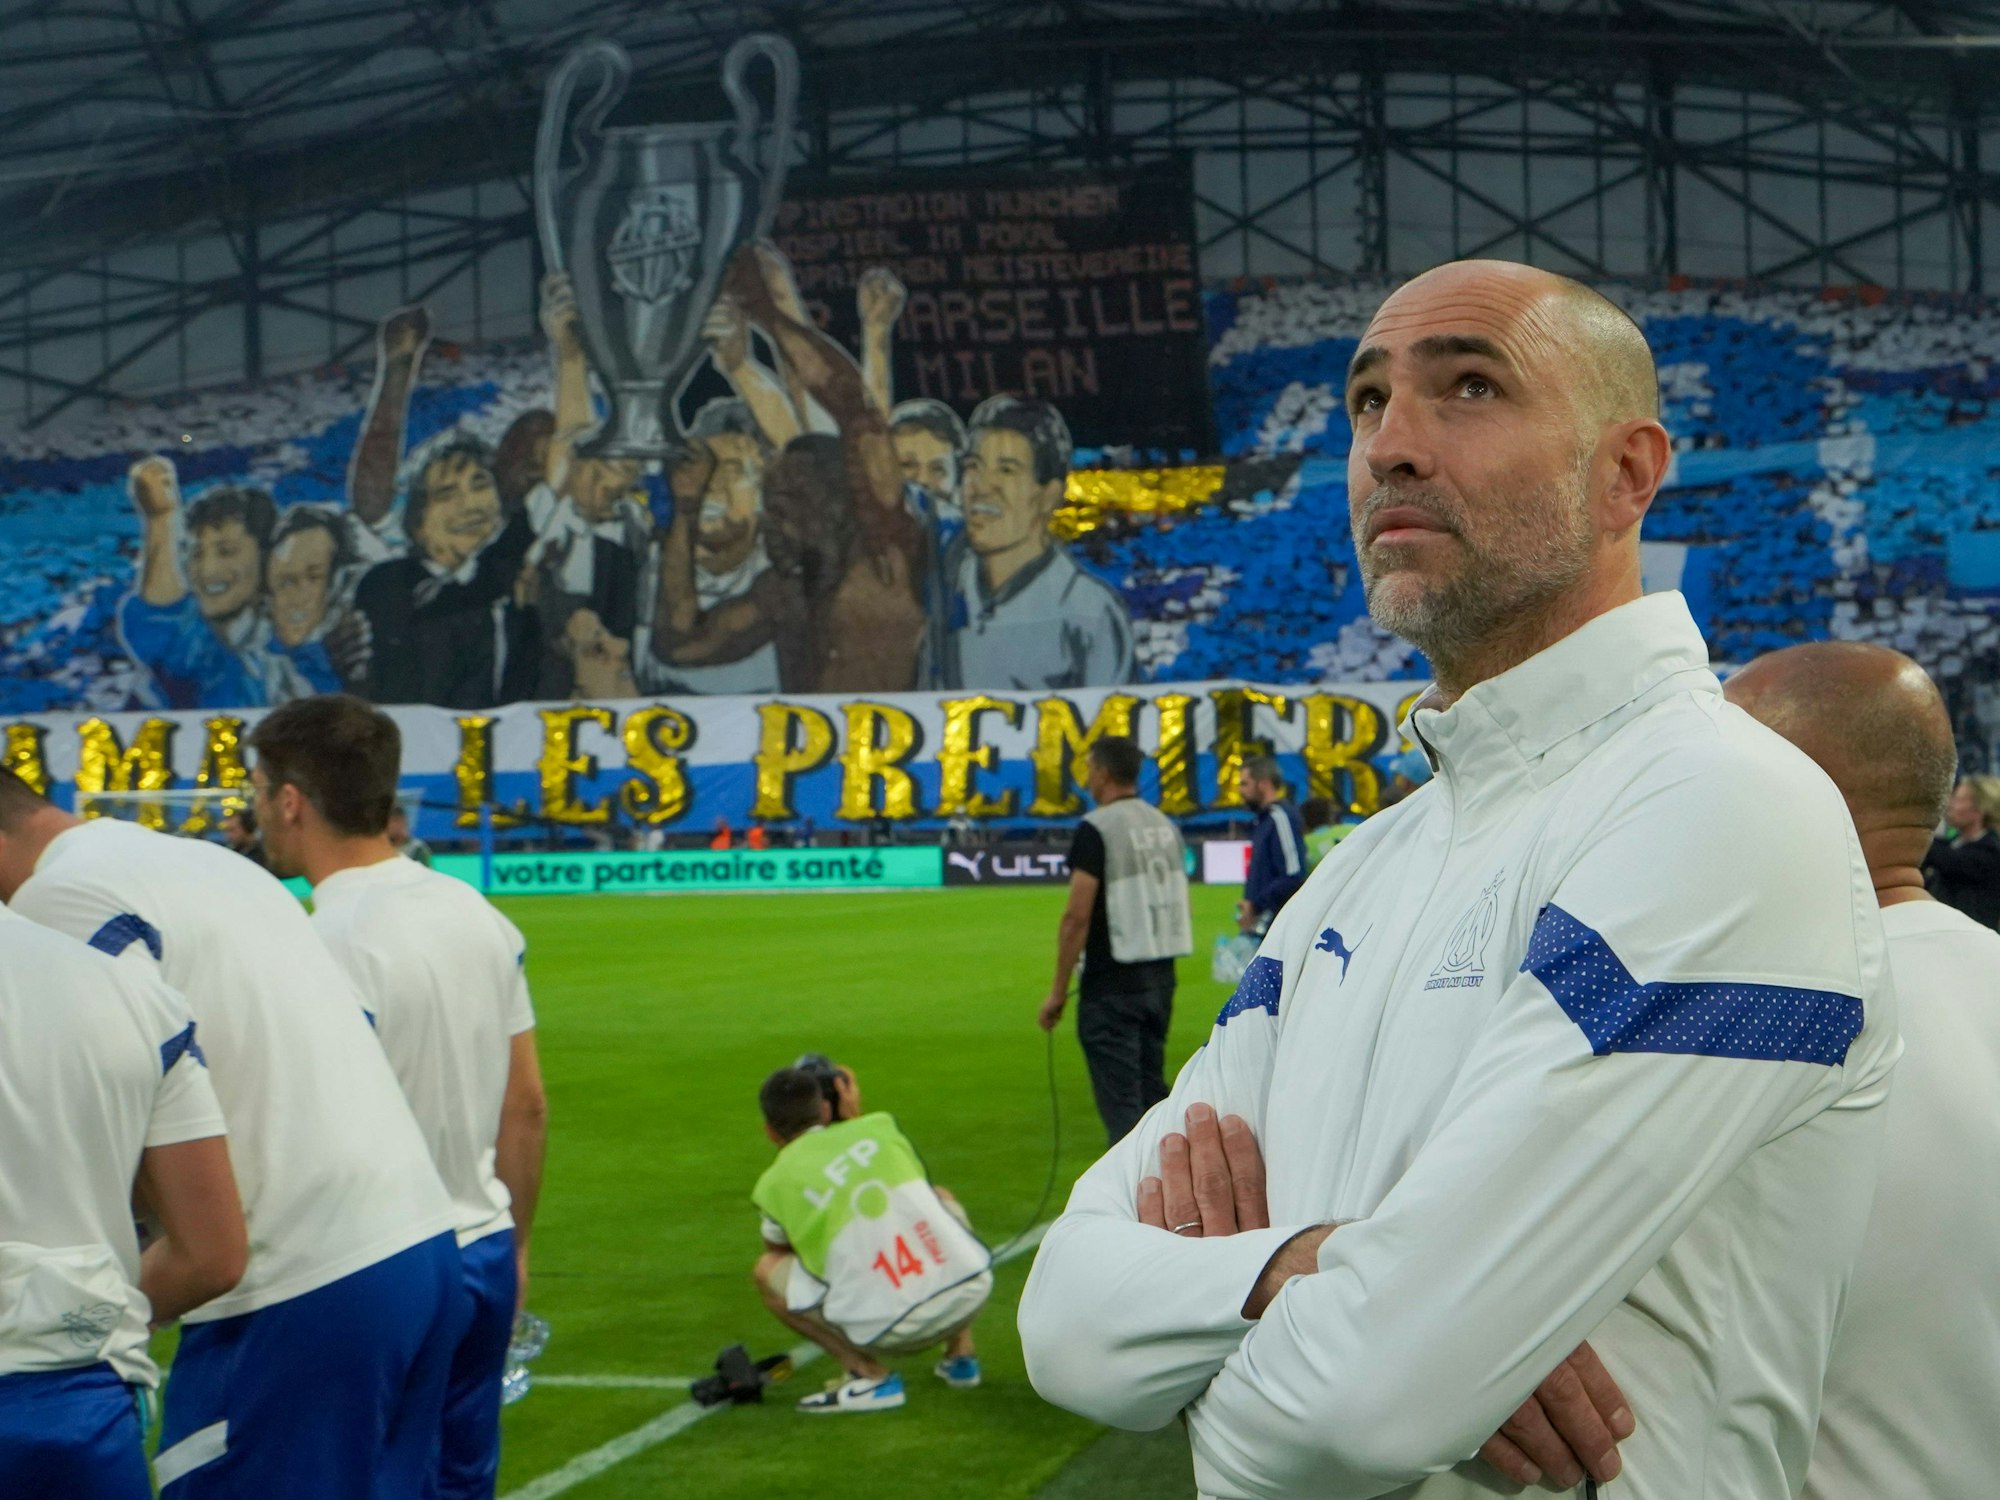 Der neue Lazio-Trainer Igor Tudor vor dem Spiel zwischen Olympique Marseille und Brest am 27. Mai 2023.